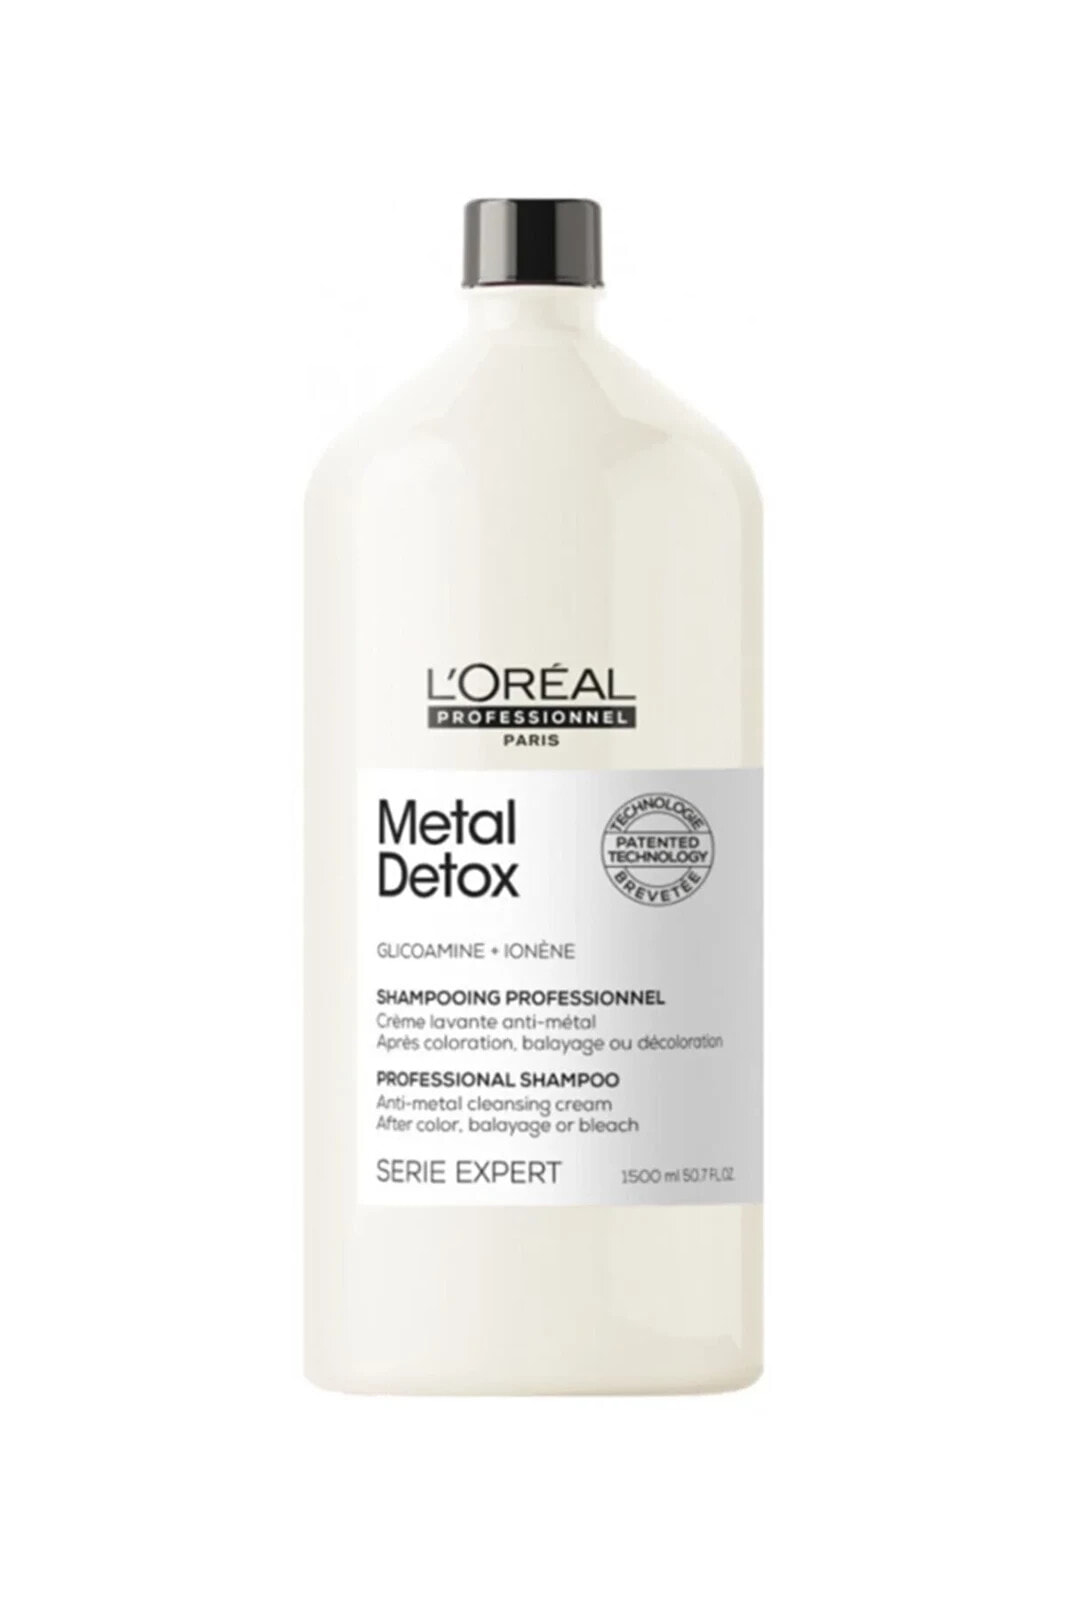 L'Oreal Professionnel Paris Metal Detox Шампунь-детокс для нейтрализации металлических частиц после окрашивания волос 1500 мл